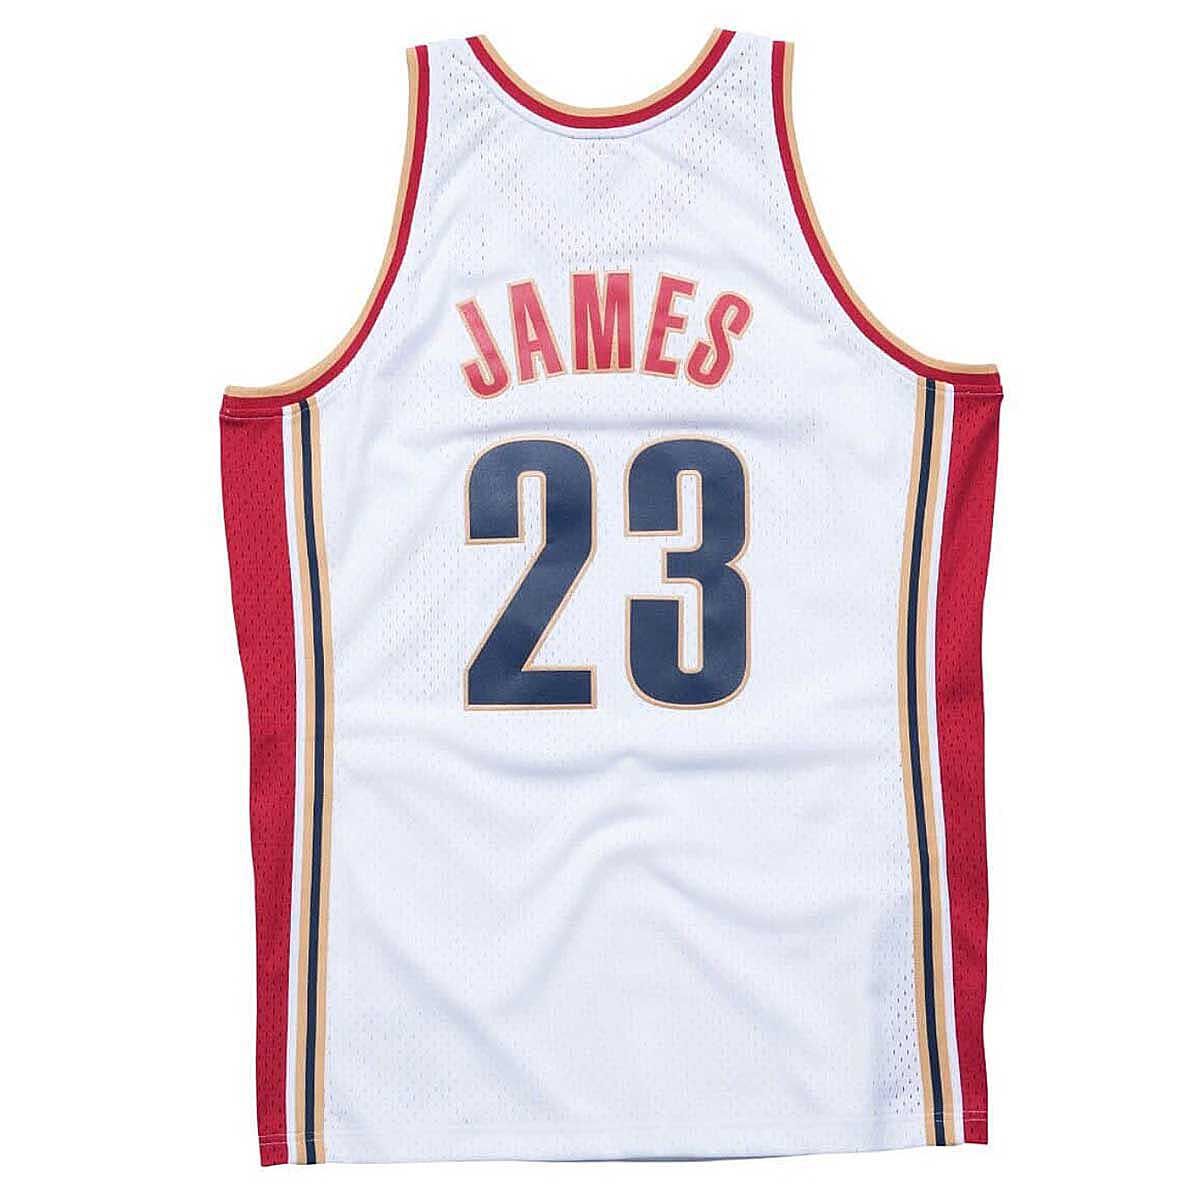 純正品2009 Adidas LEBRON JAMES Swingman All-Star Jersey Size (L) / レブロン ジェームズ Bought @NBA store 100% Authentic 記念ユニフォーム